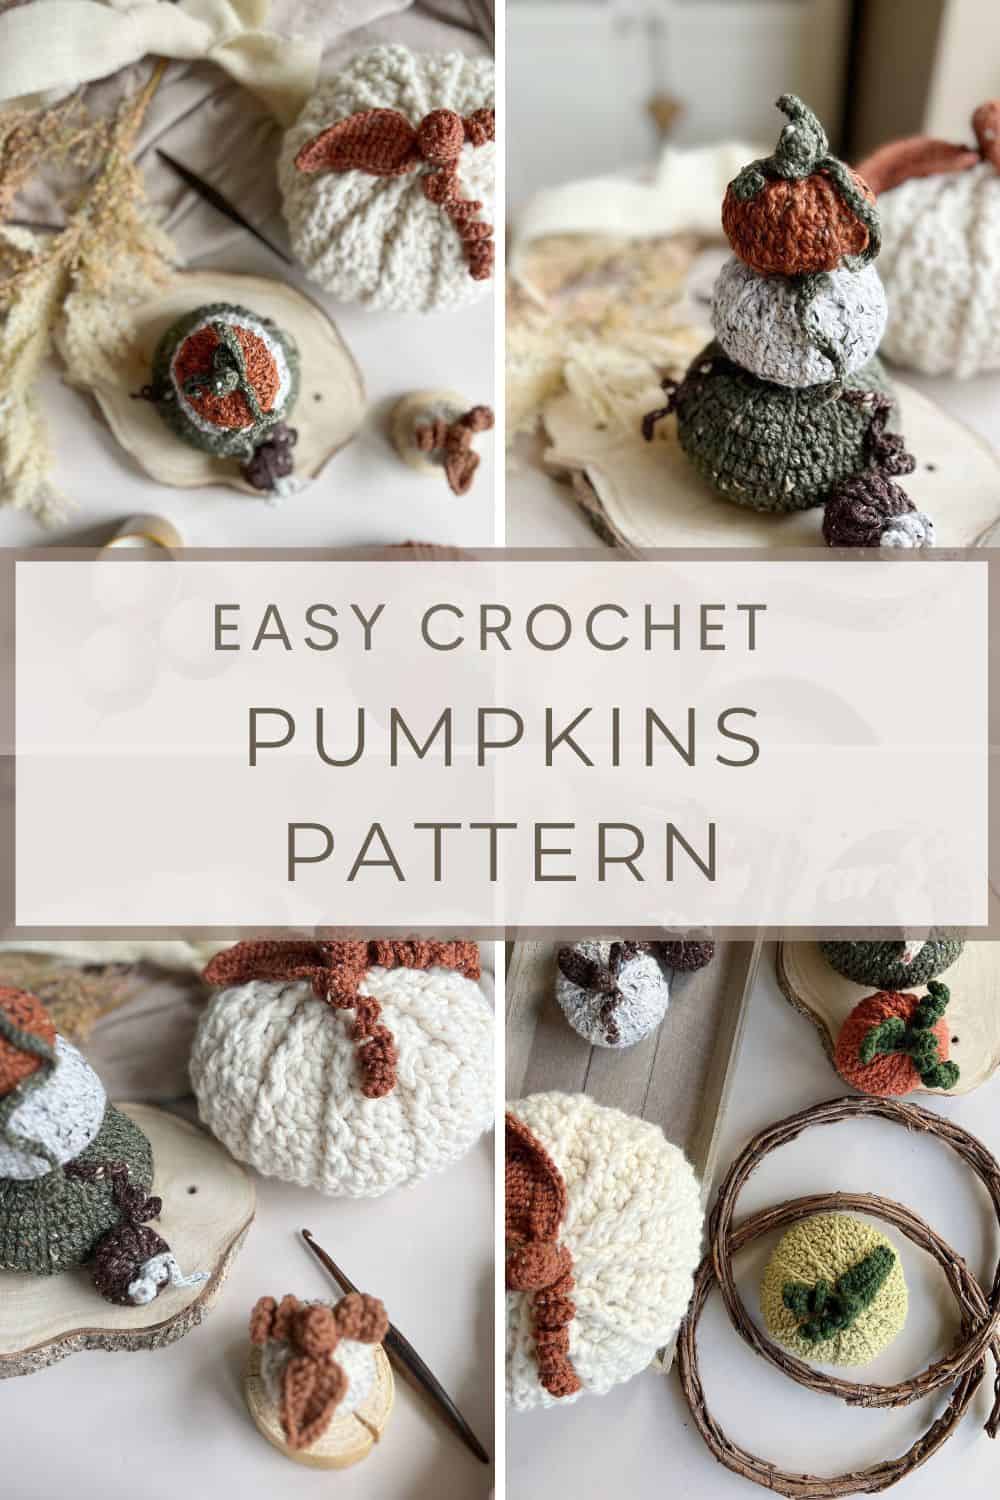 Easy crochet pumpkins pattern.